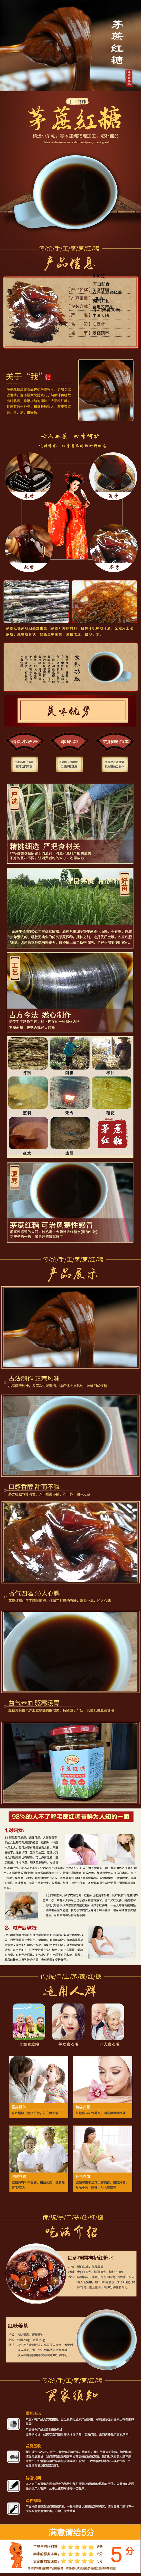 古典中国风红糖食品详情页PSD模版